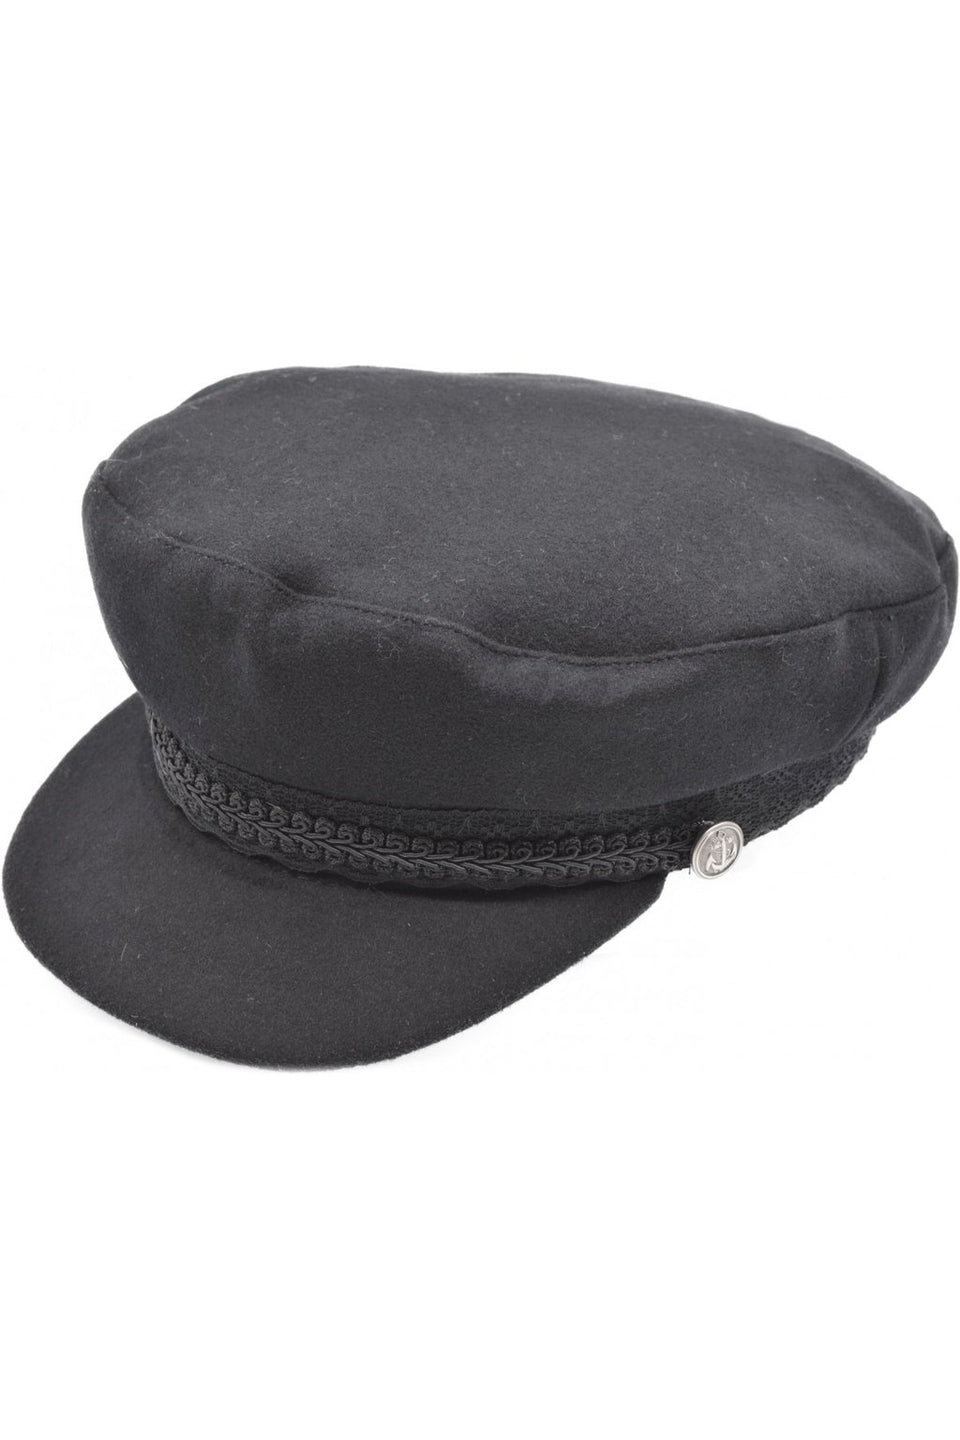 Steampunk Captains Hat, Casual Captains Breton Cap - Black | Angel ...